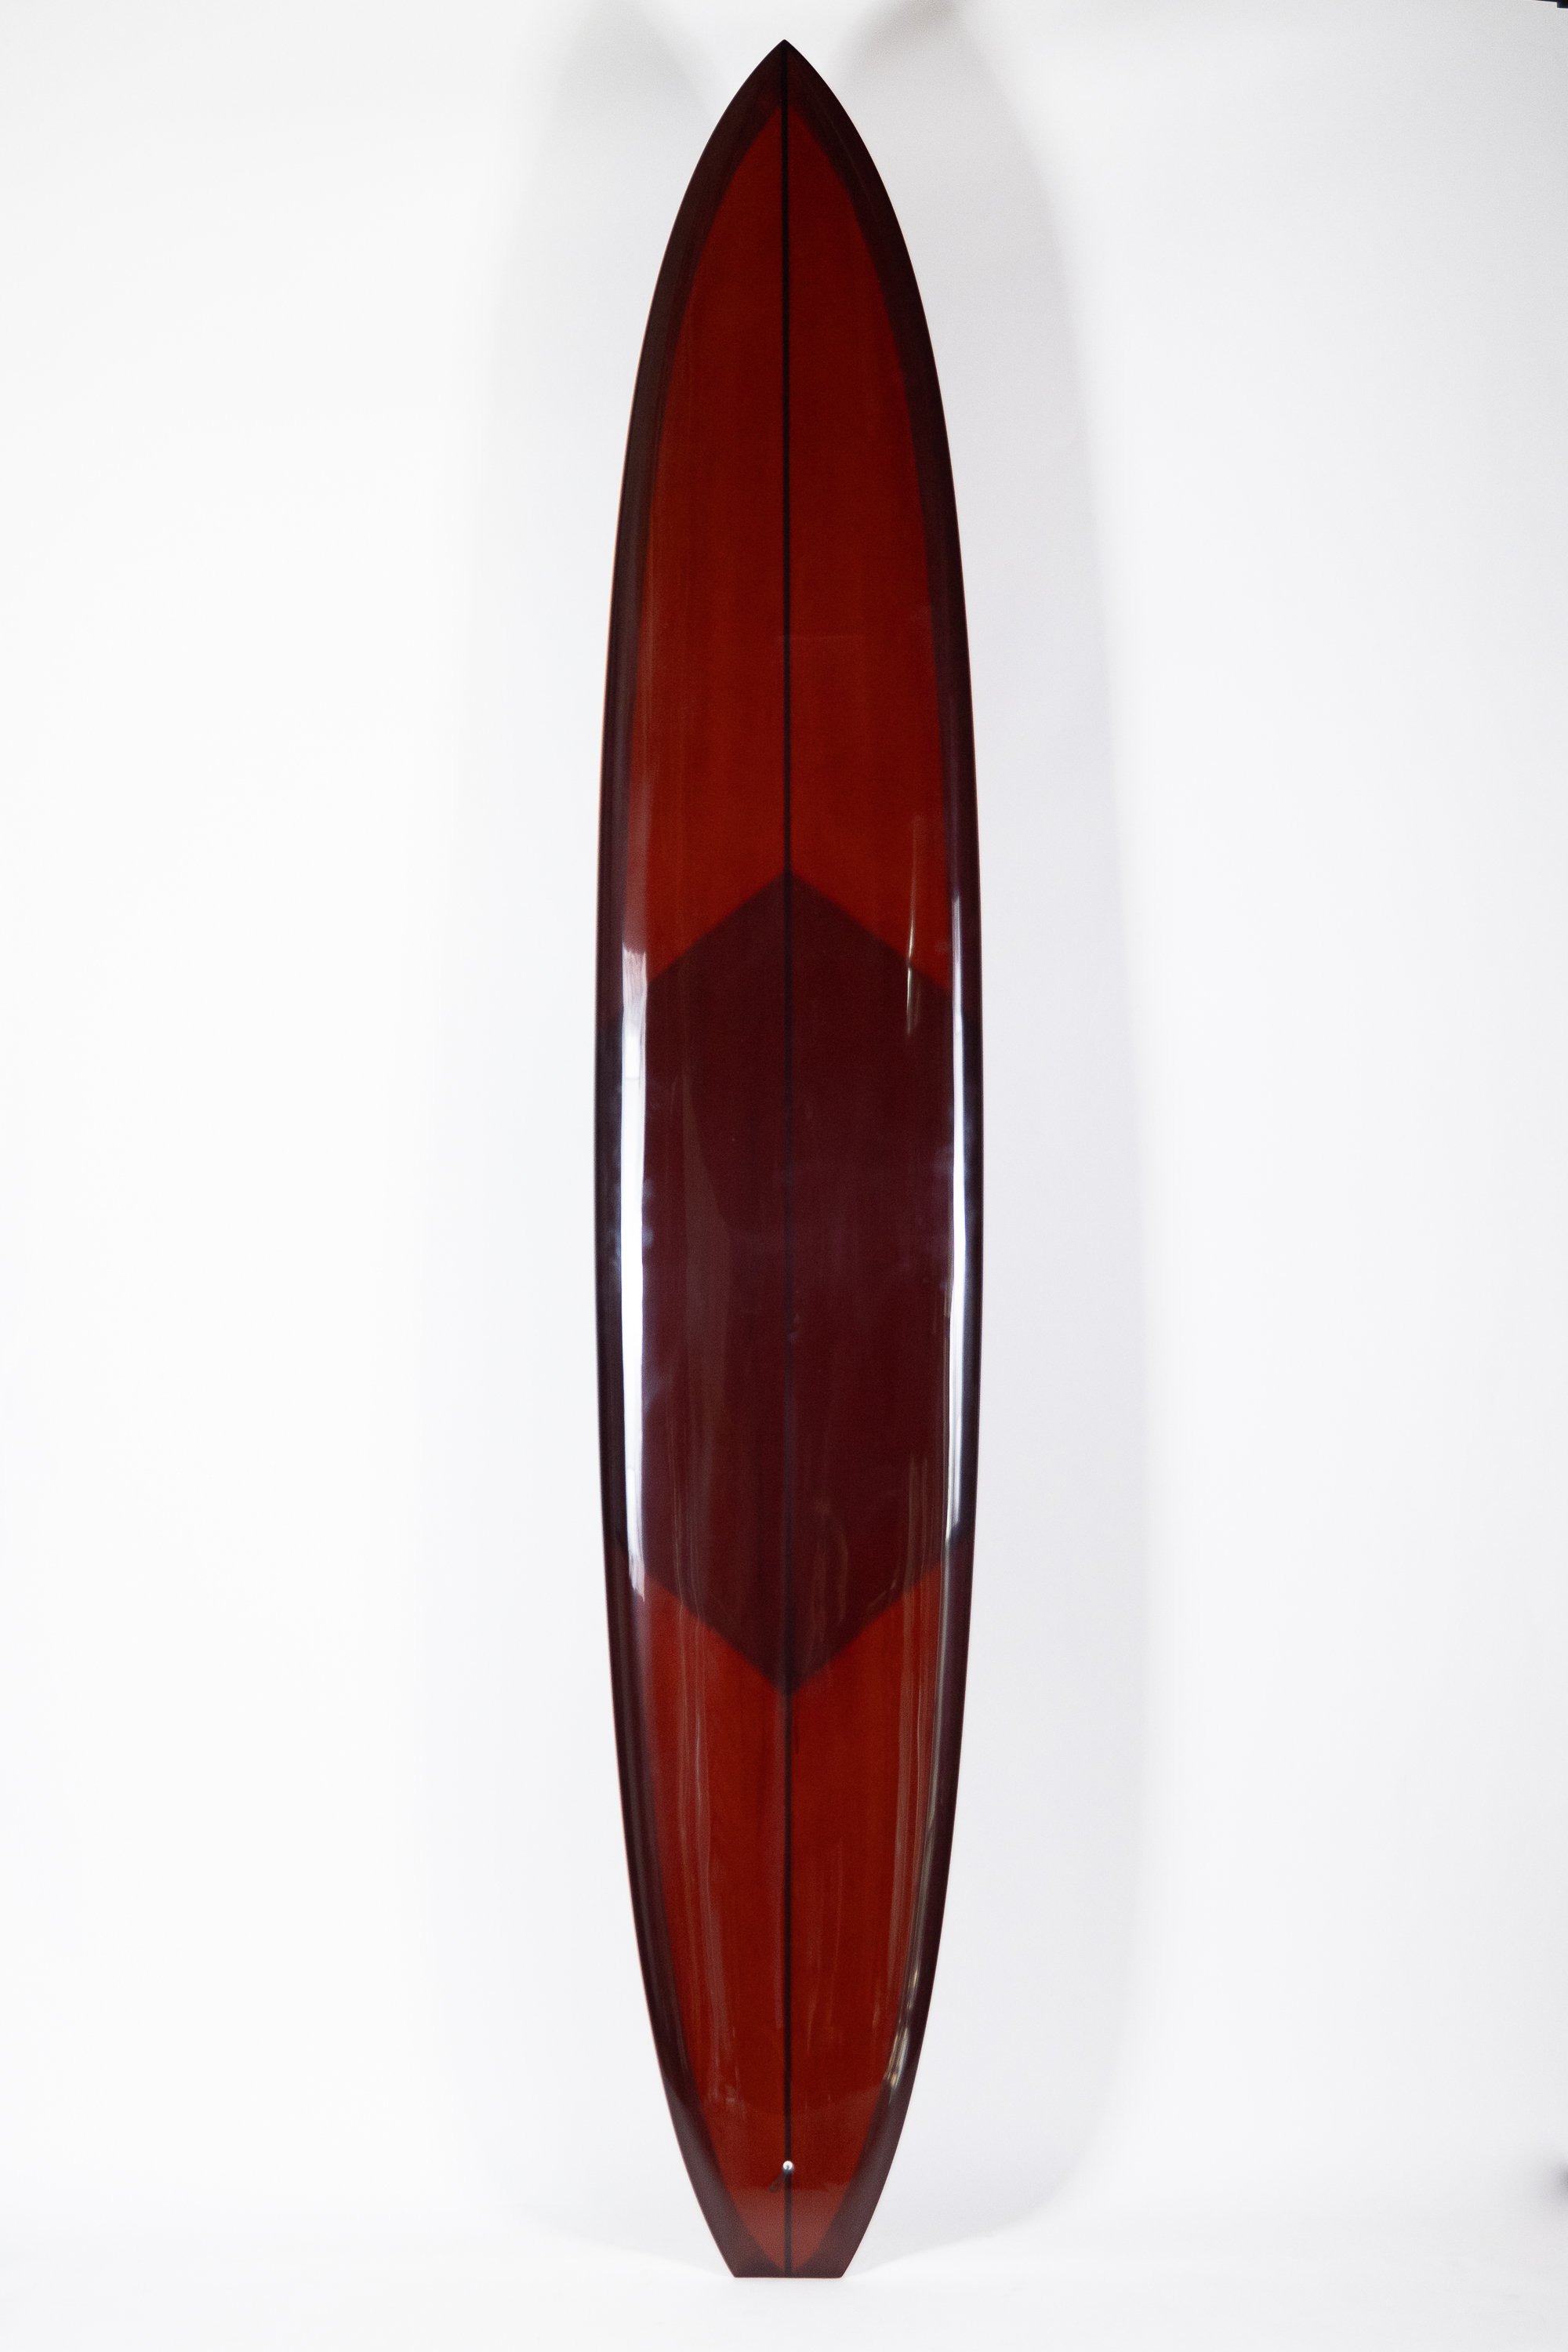 2023-Christenson Surfboards-214.jpg